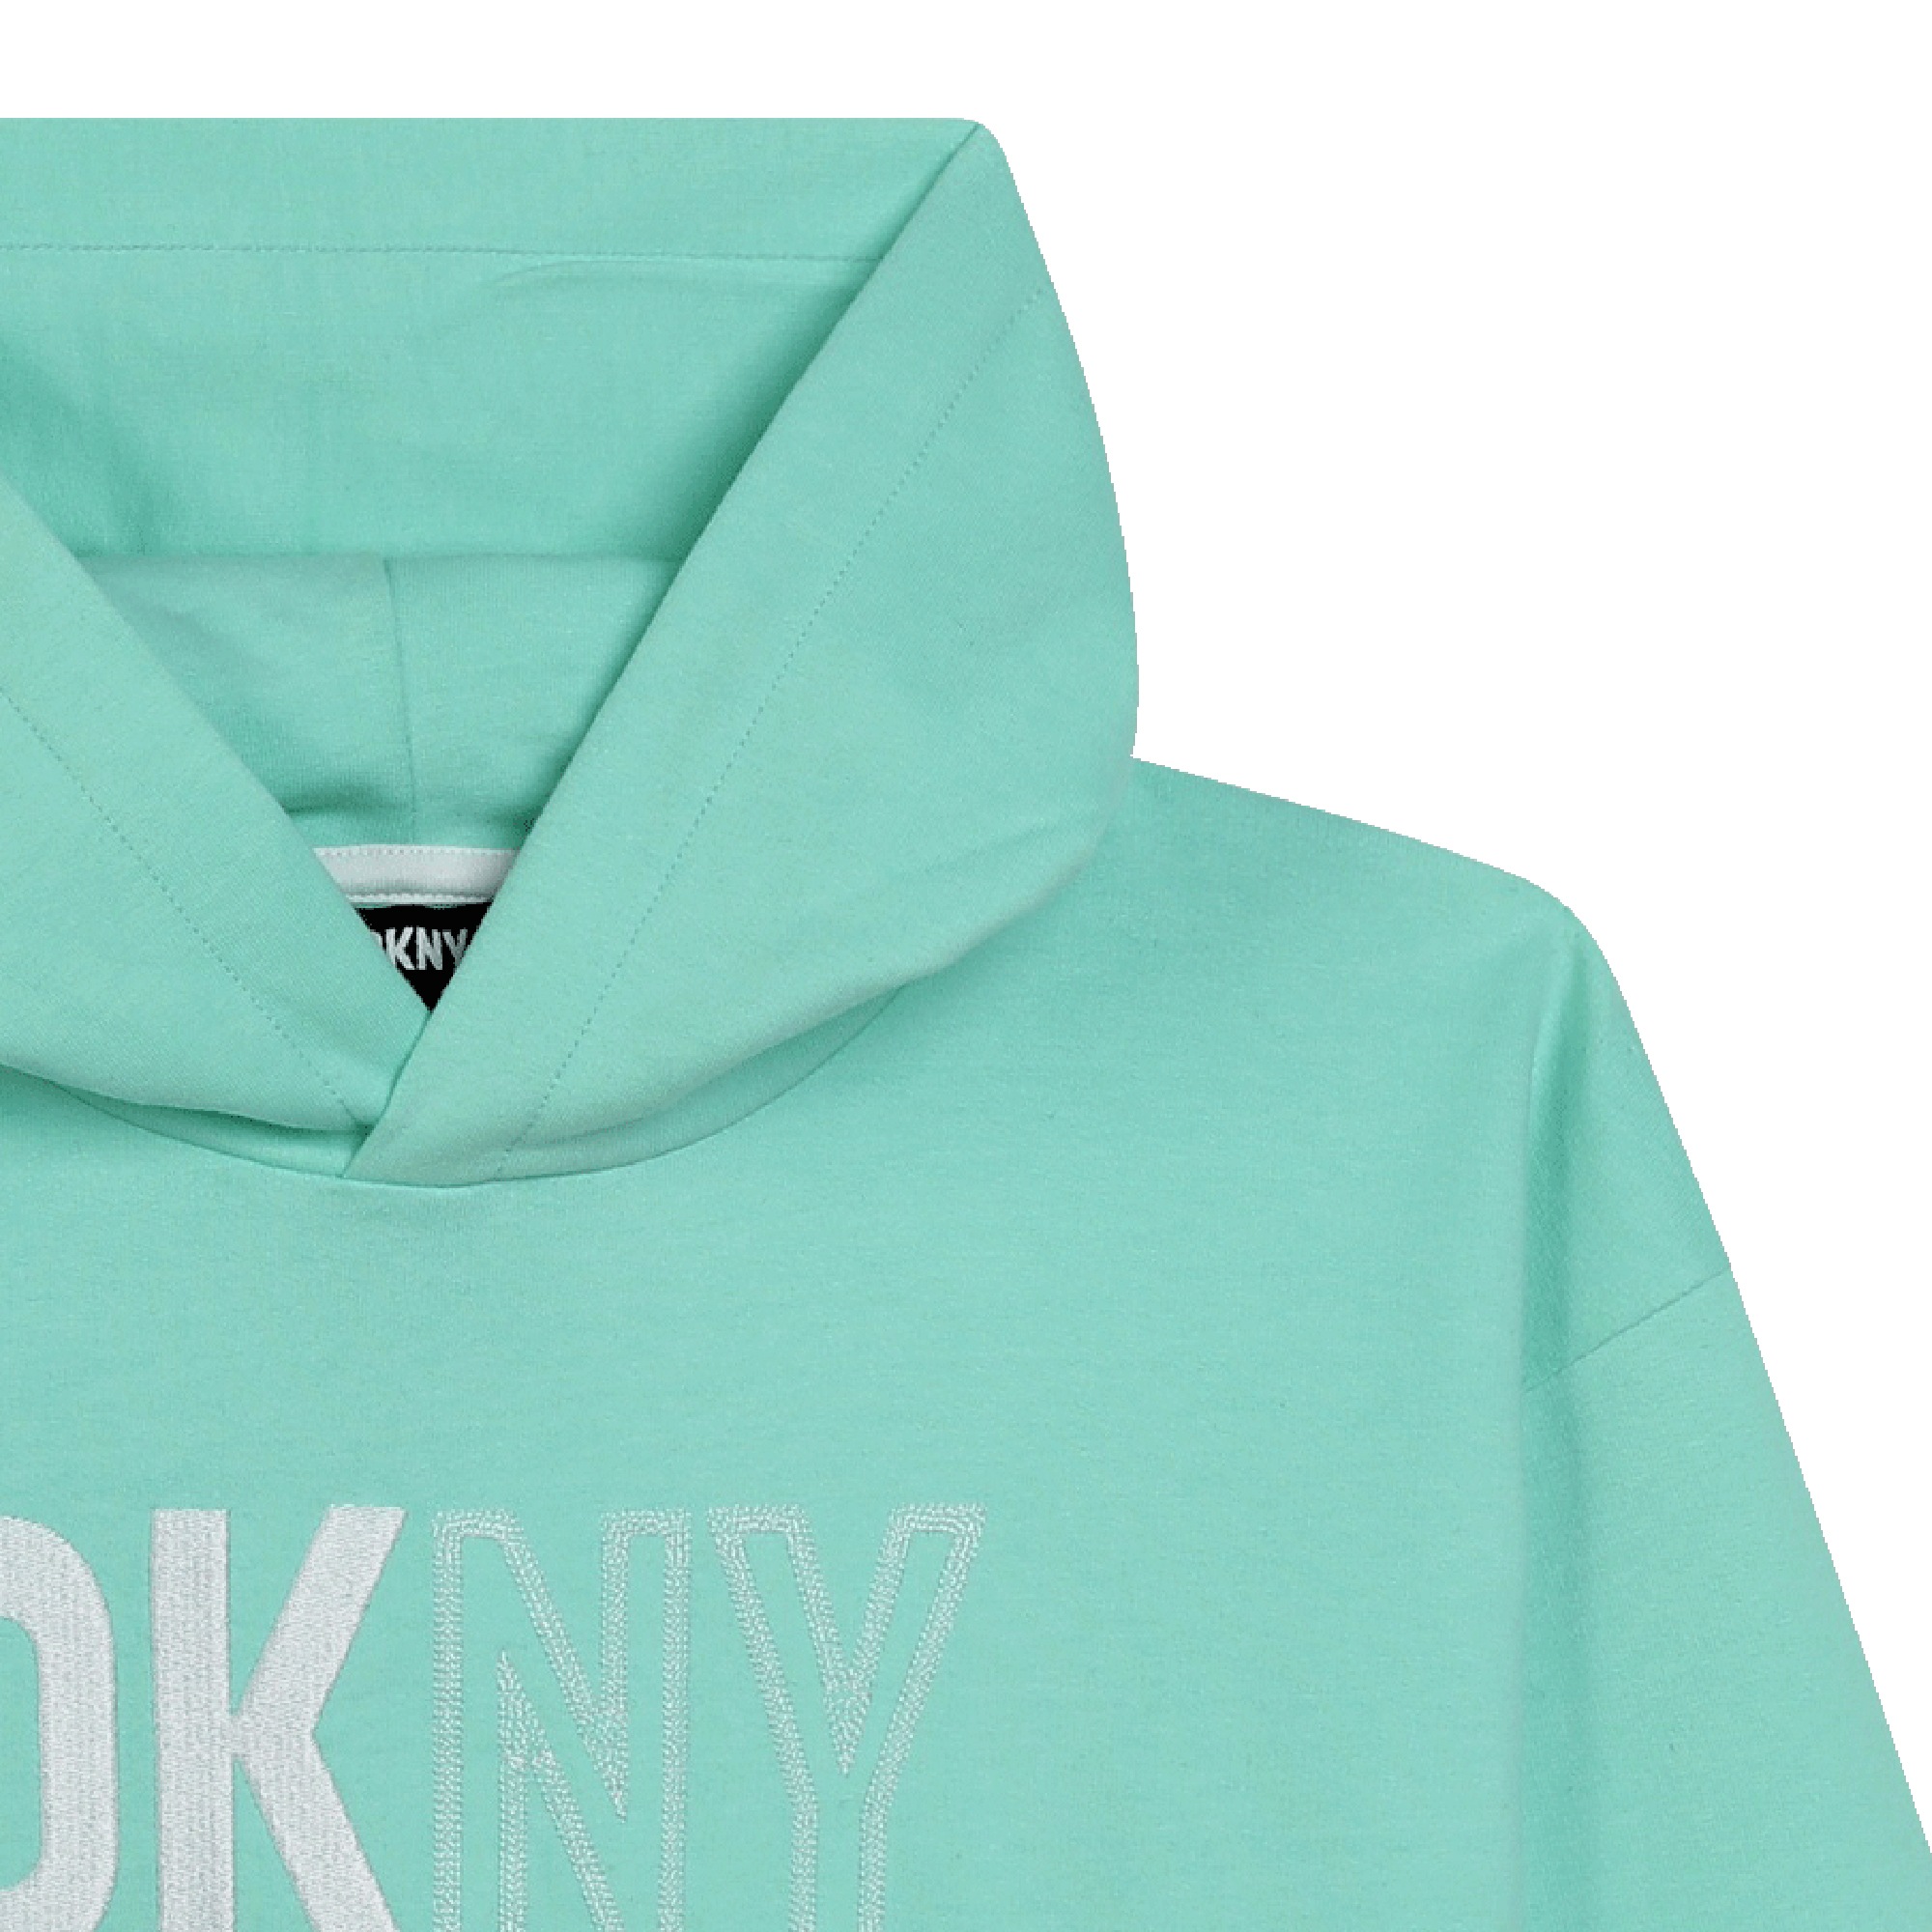 Unisex fleece sweatshirt DKNY for UNISEX